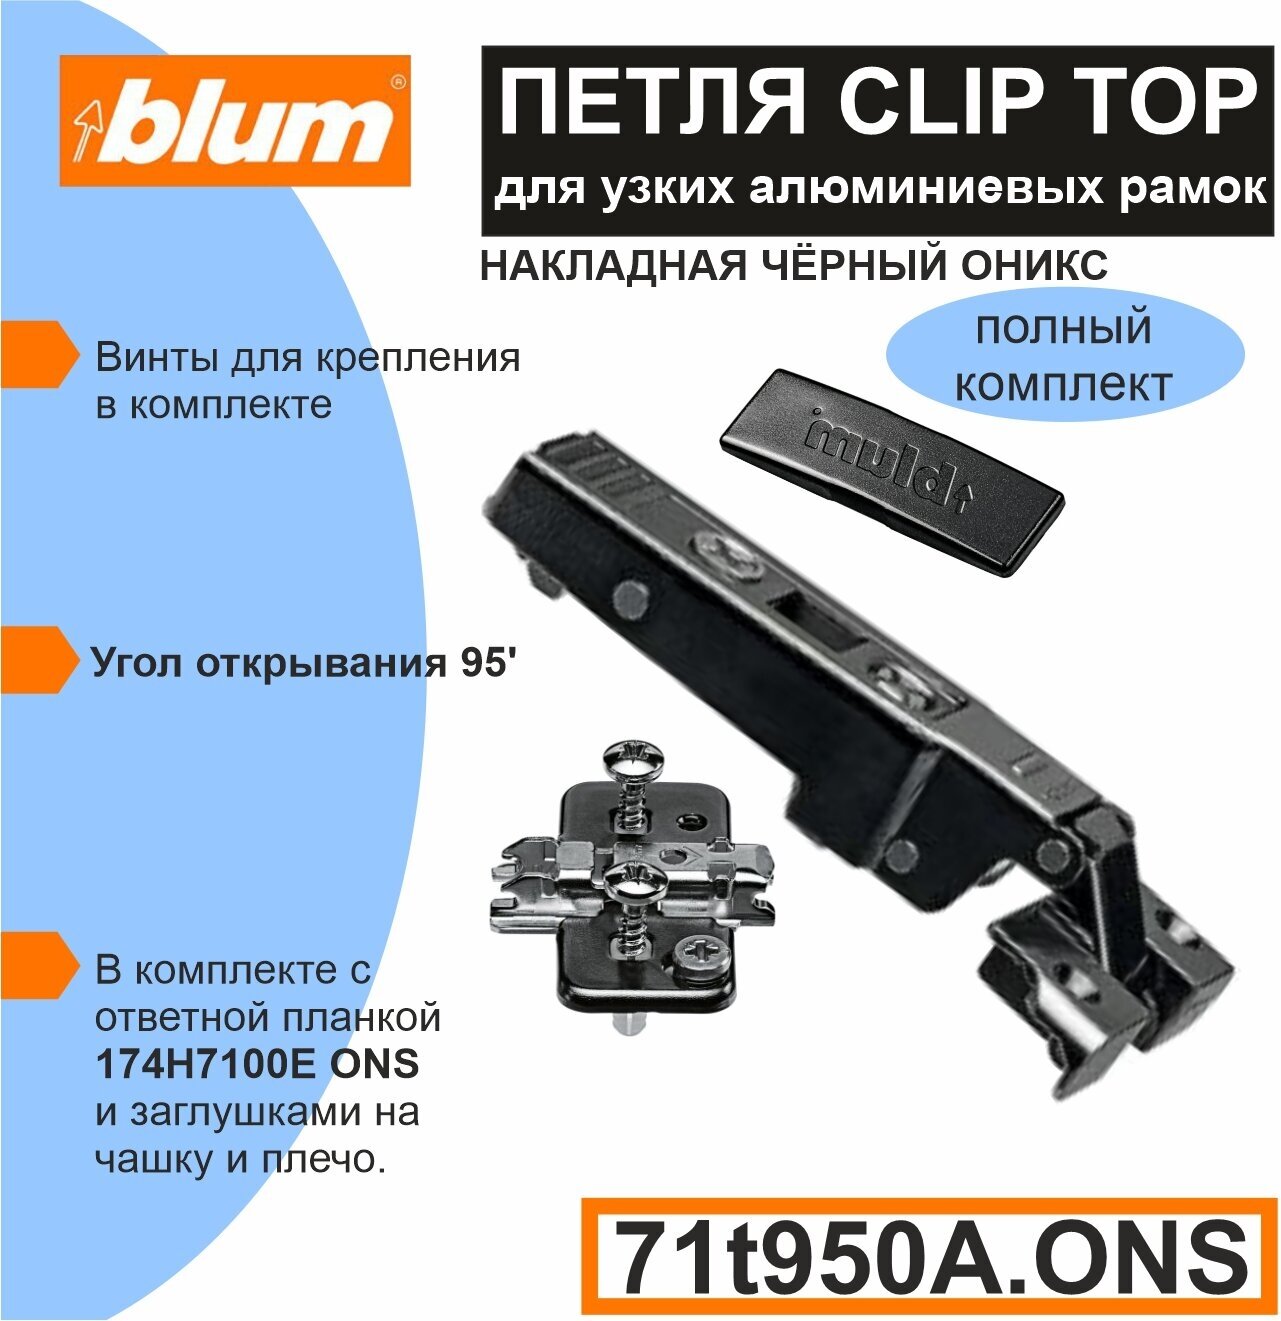 Петля Blum CLIP TOP 71T950A. ONS цвет черный оникс накладная для узких алюминиевых рамок с ответной планкой 174H7100E ONS и заглушкой на плечо - 1 комплект